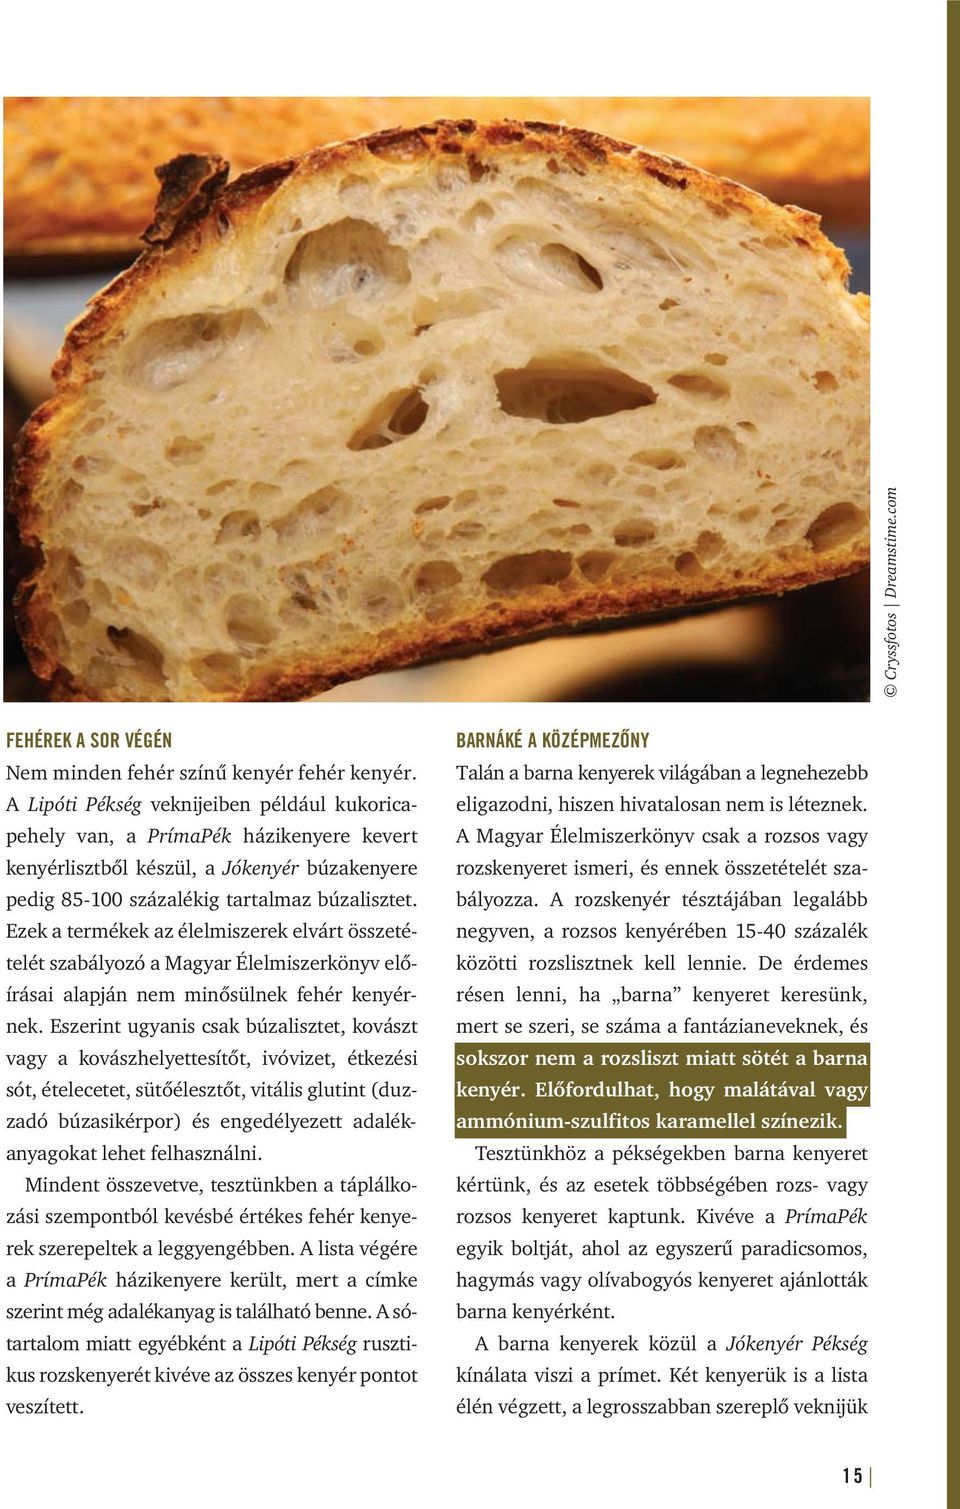 Ezek a termékek az élelmiszerek elvárt összetételét szabályozó a Magyar Élelmiszerkönyv előírásai alapján nem minősülnek fehér kenyérnek.